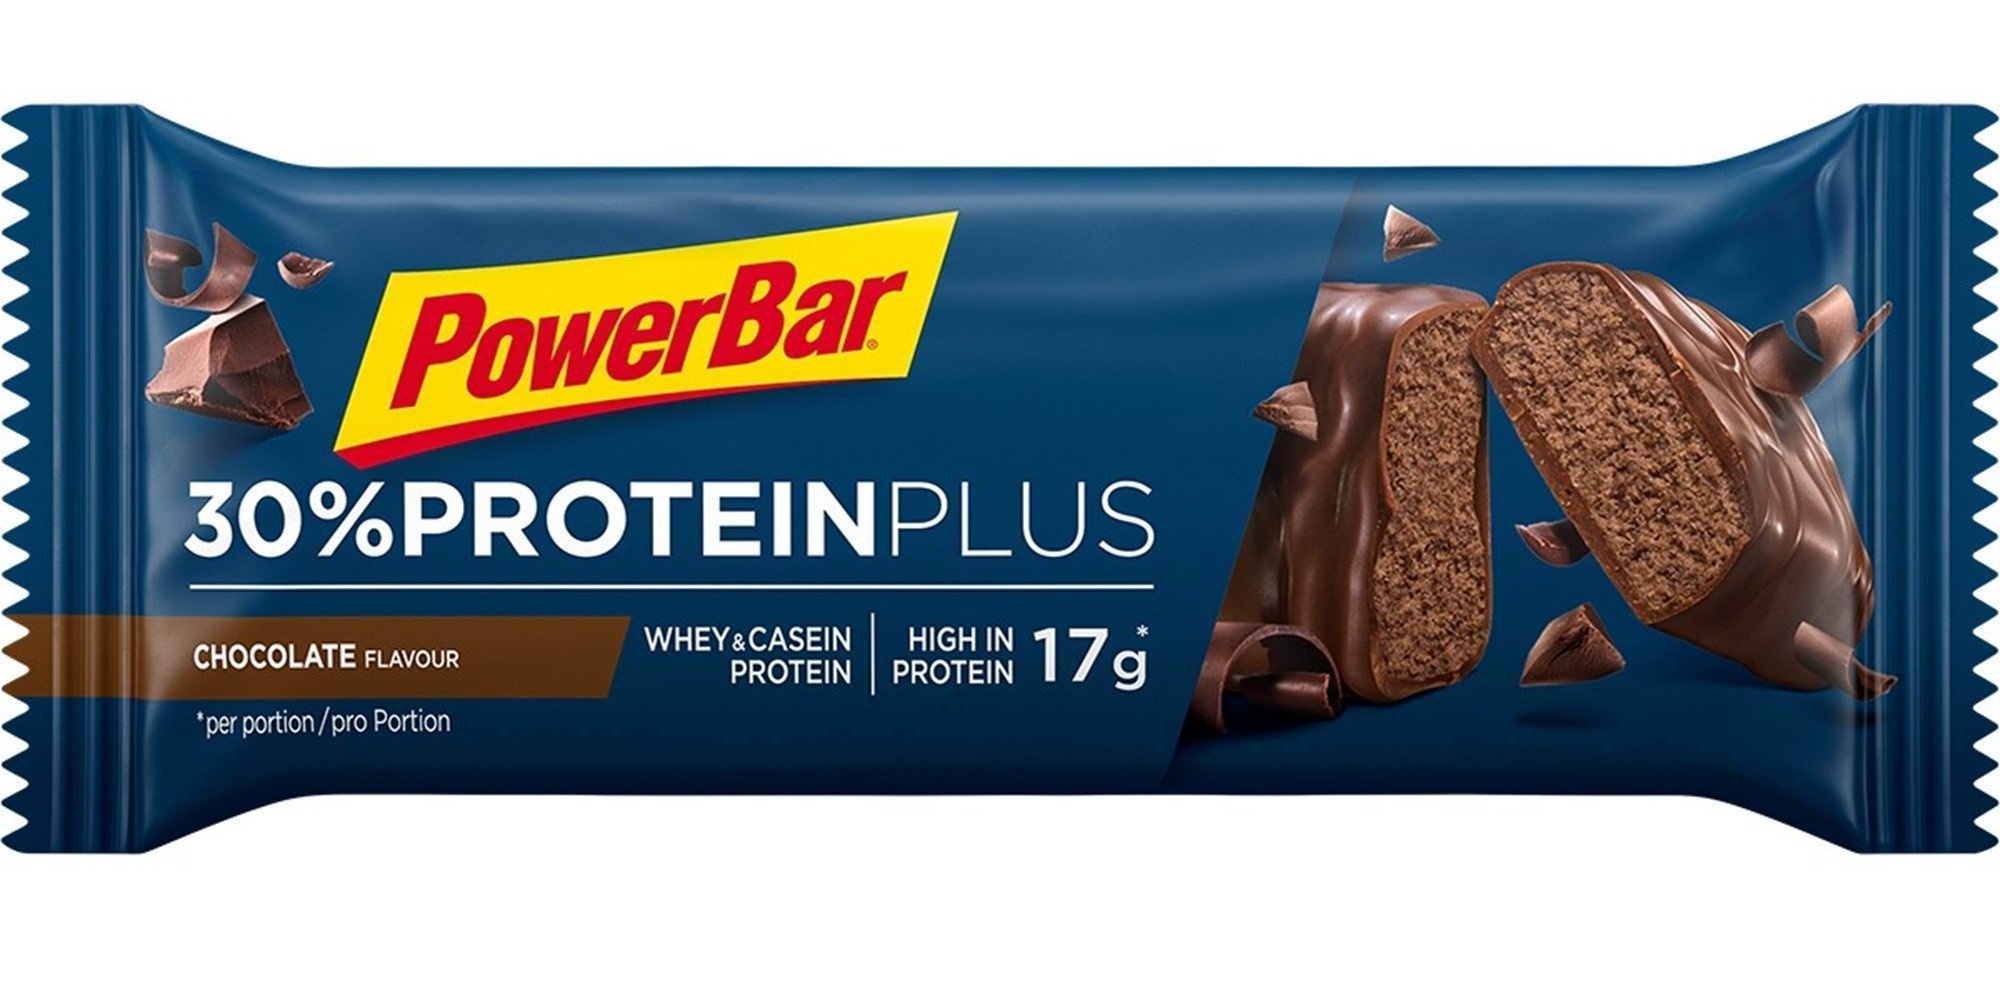 4: PowerBar 30% Protein Plus Chocolate